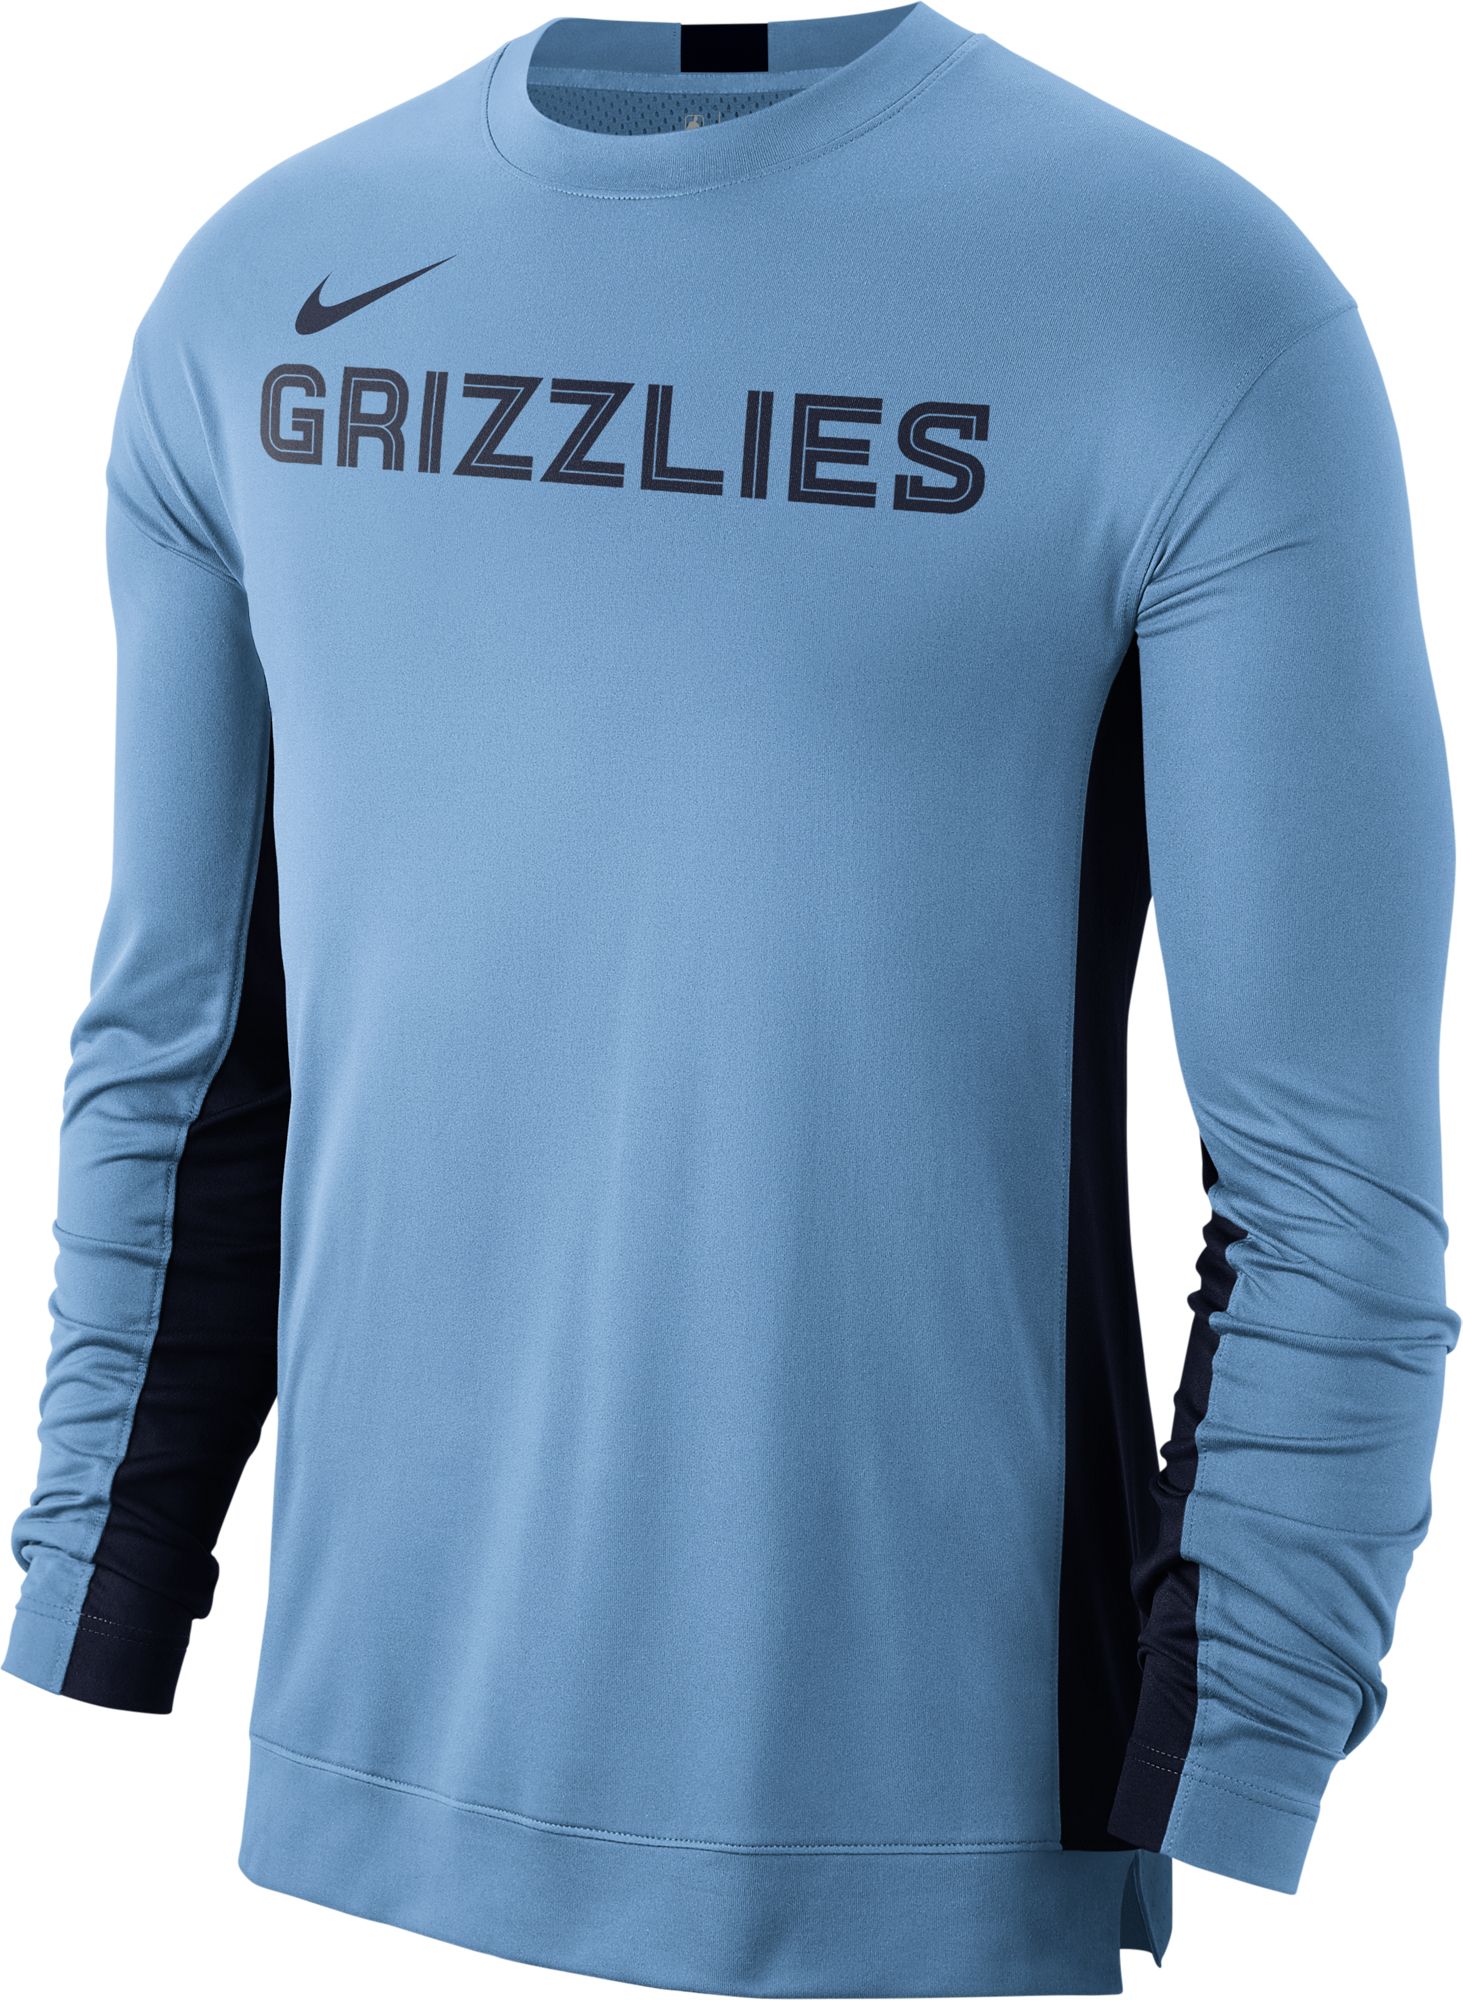 memphis grizzlies long sleeve shirt